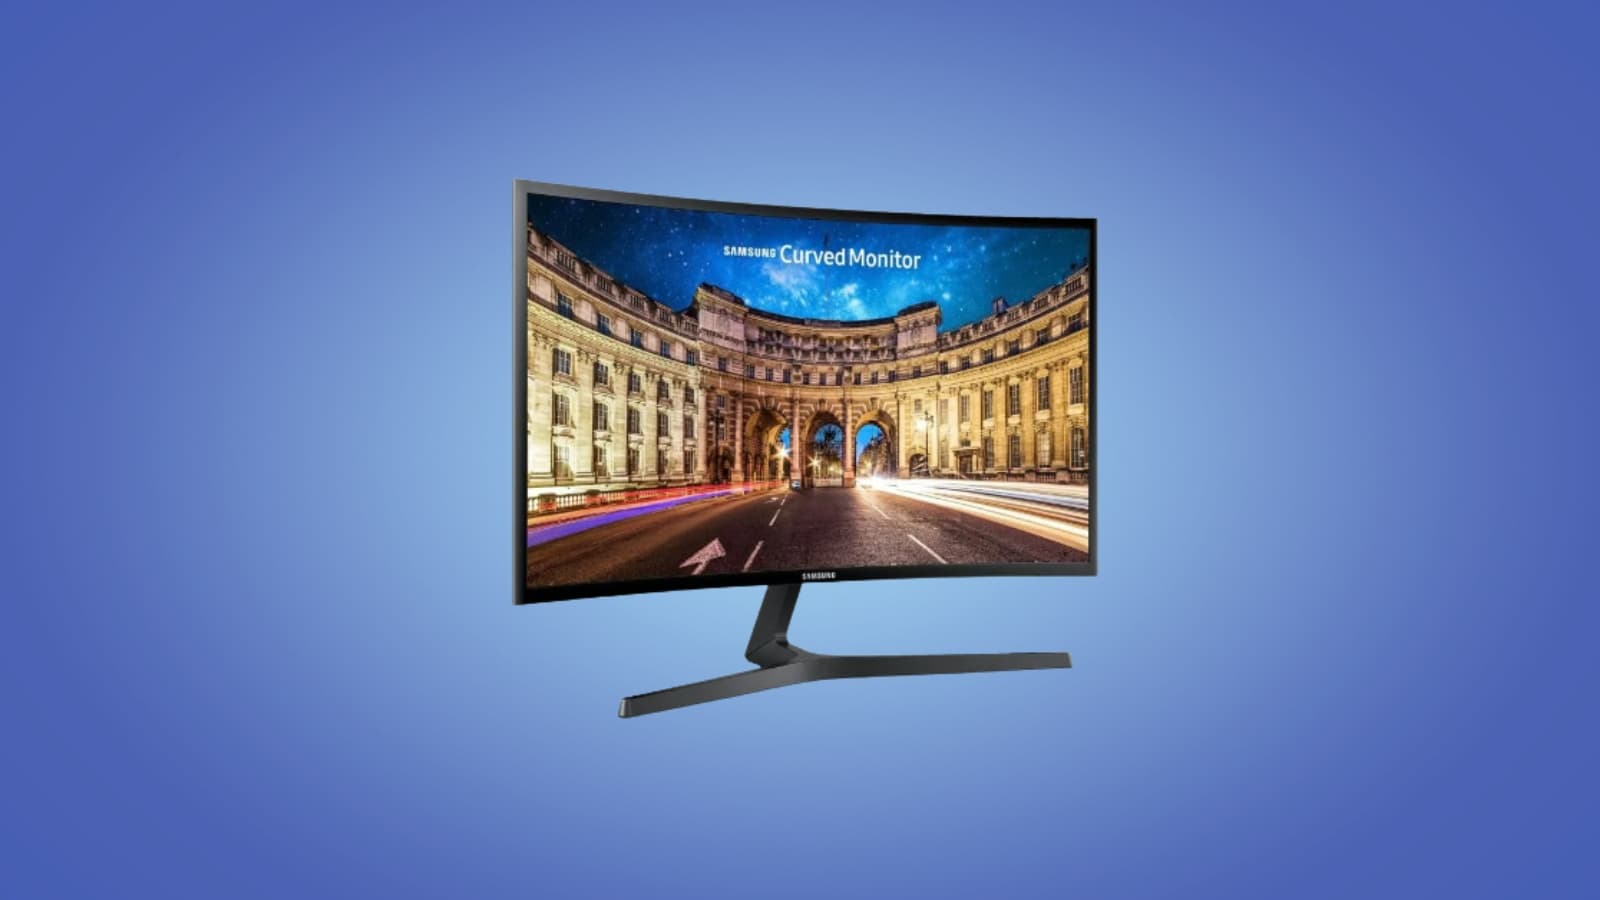 Écran PC Gaming incurvé 24 FullHD Samsung à 151,99€ au lieu de